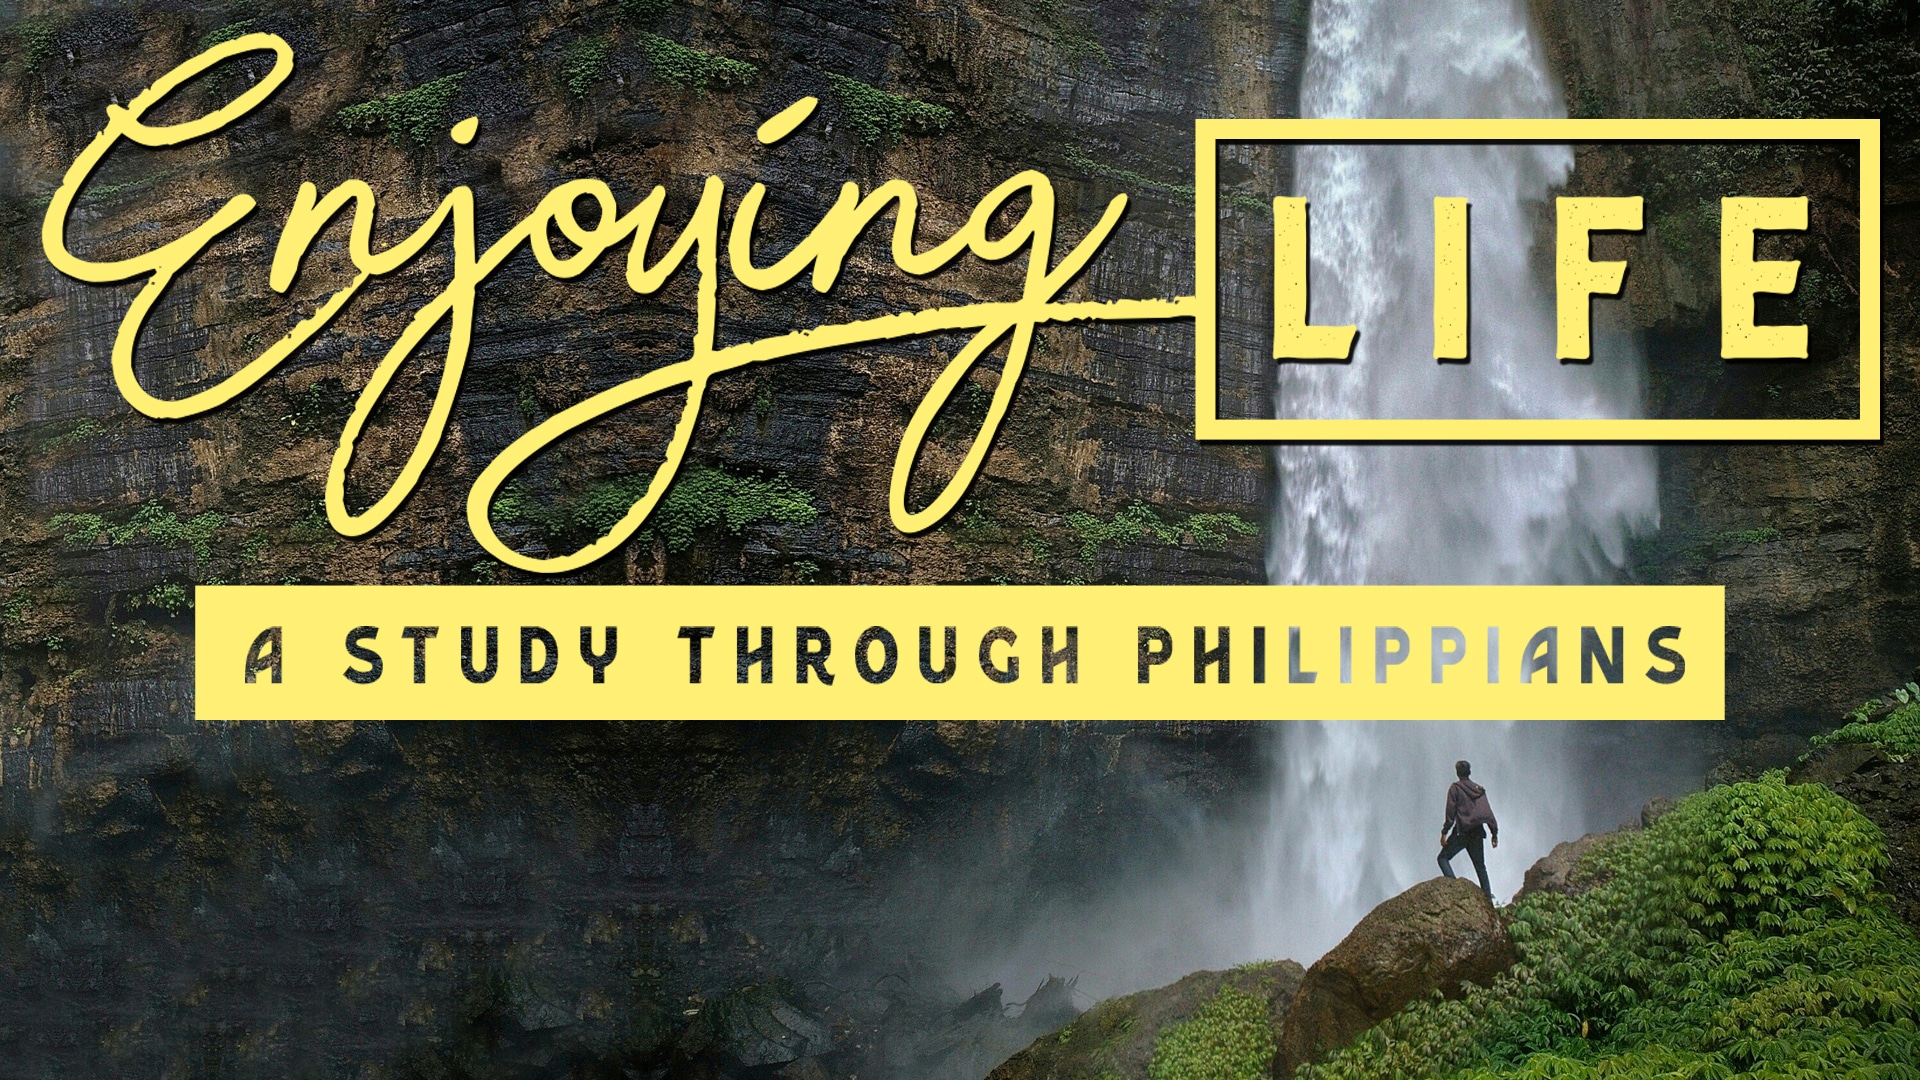 Philippians 3:12-16 Focusing On The Goal (Enjoying Life) Image